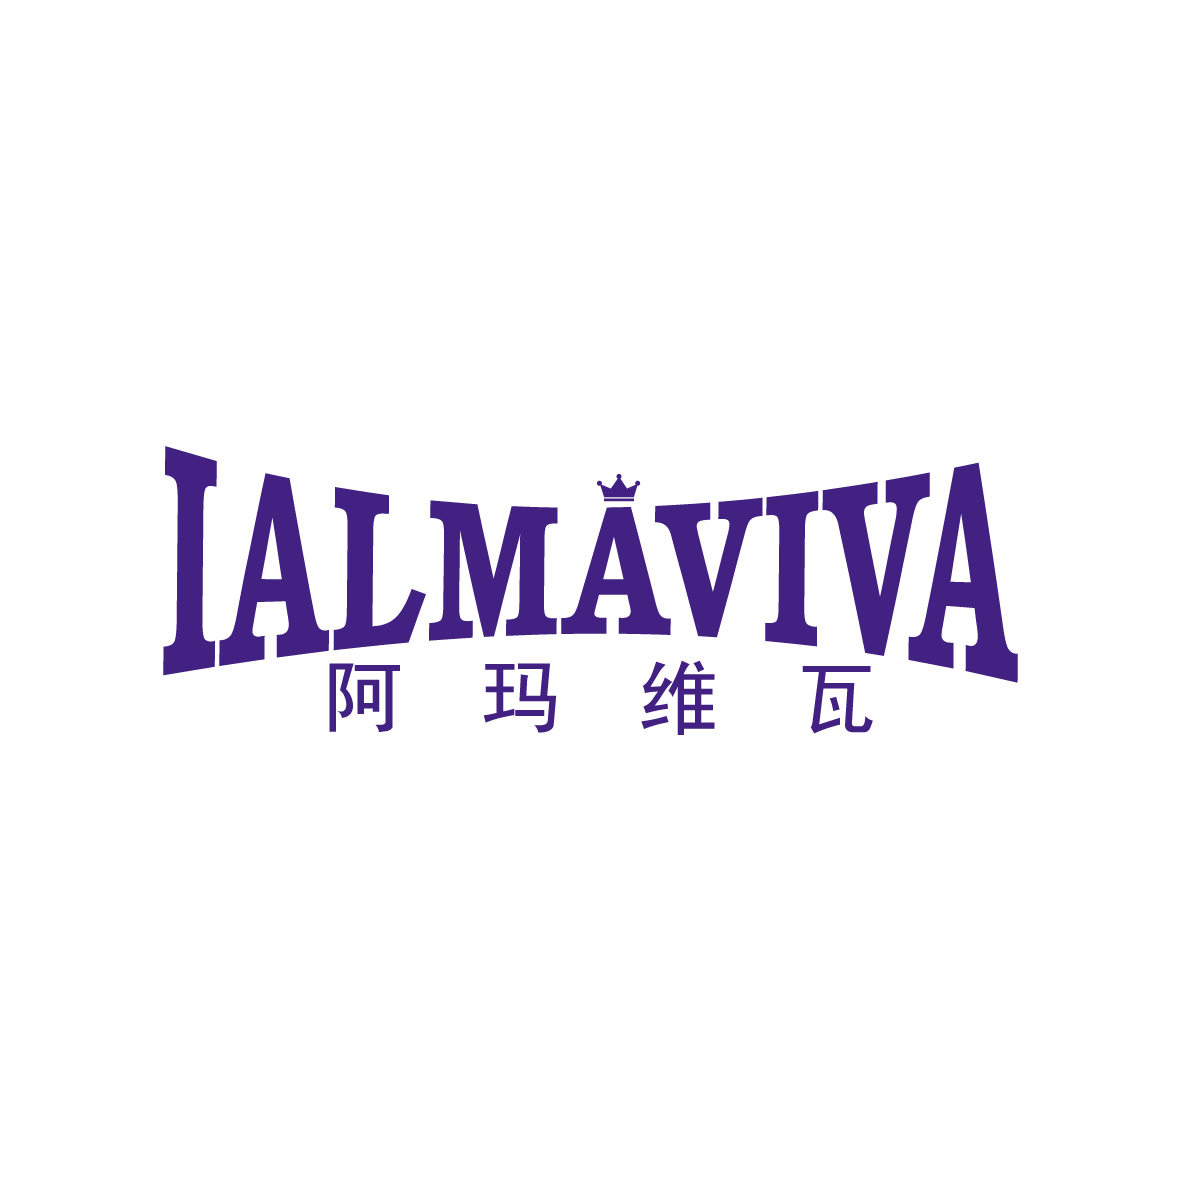 刘轶商标阿玛维瓦 IALMAVIVA（43类）商标转让流程及费用